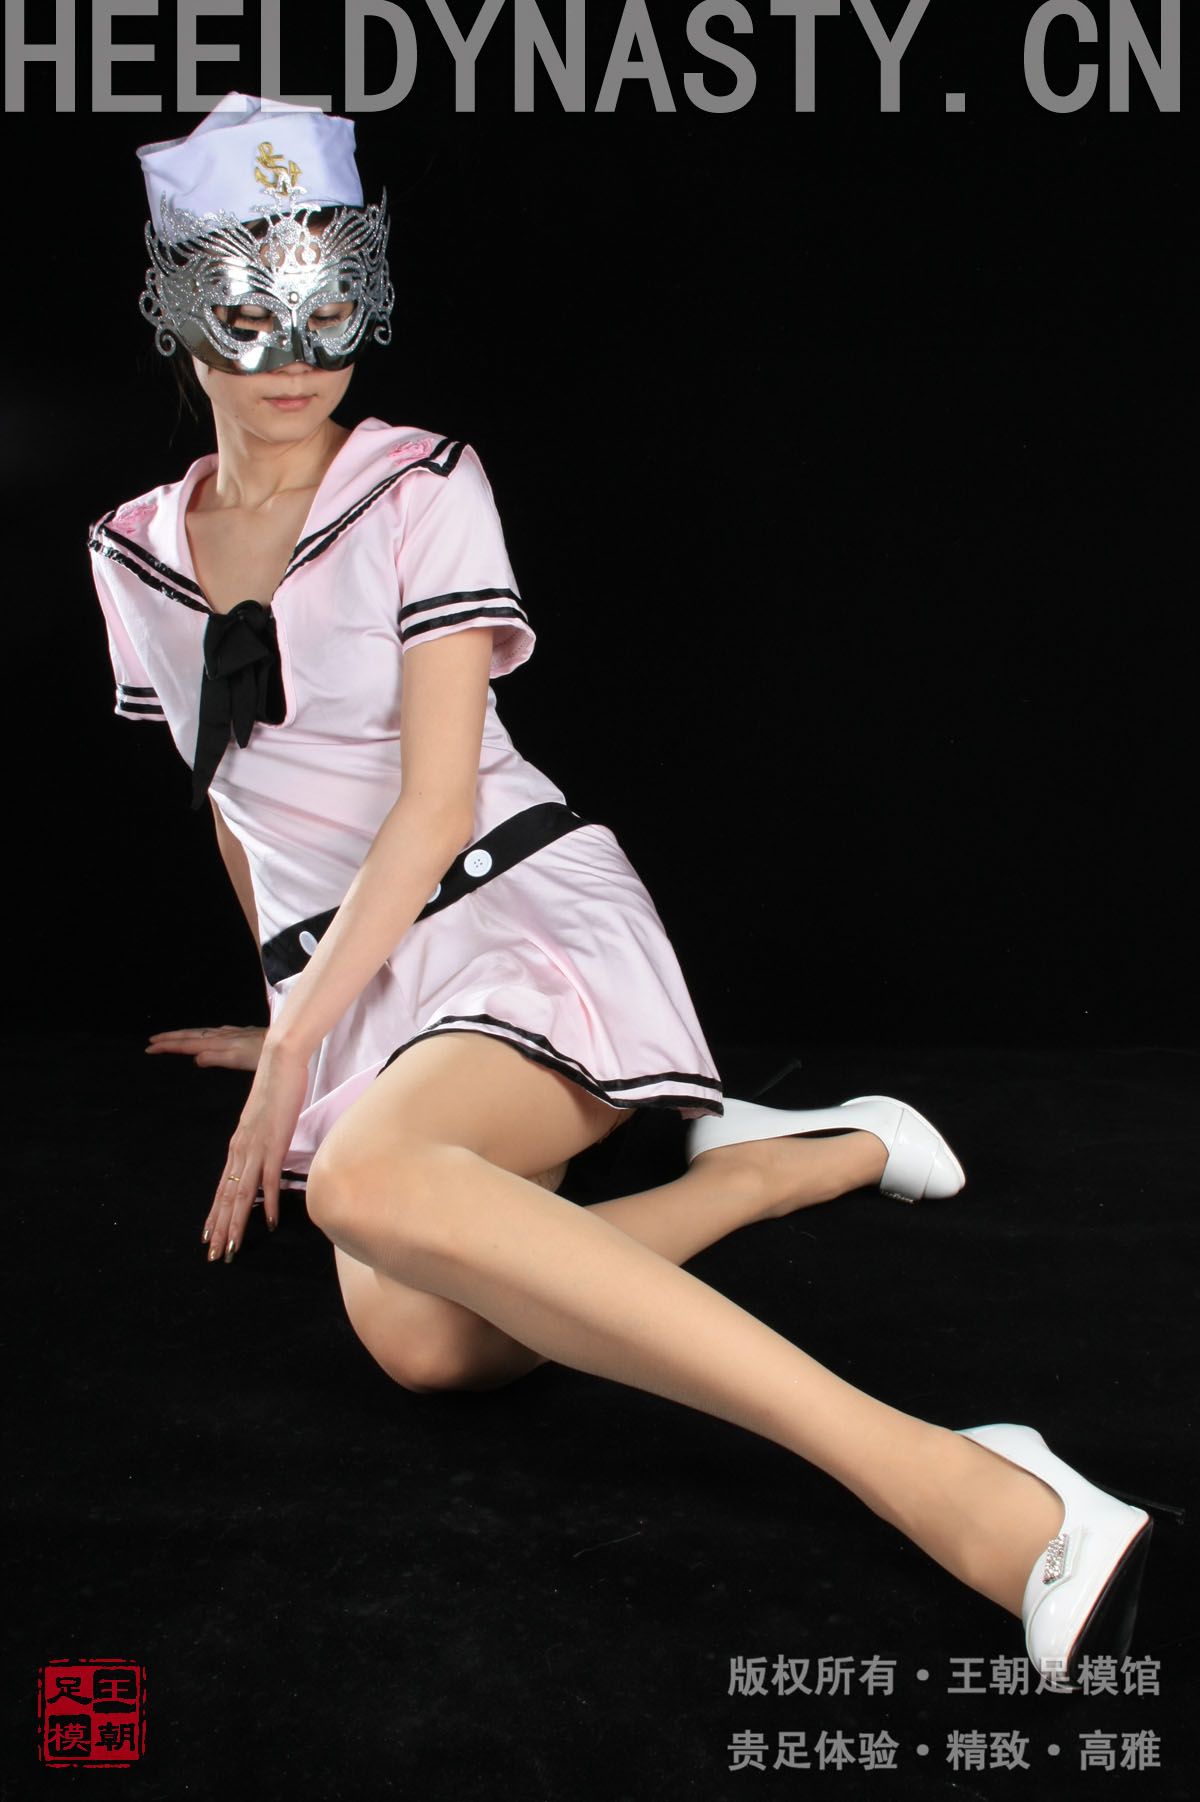 [王朝贵足丝袜] 2009-02-26 室内套图 布丁粉色水手制服短裙肉丝白色高跟系列A0